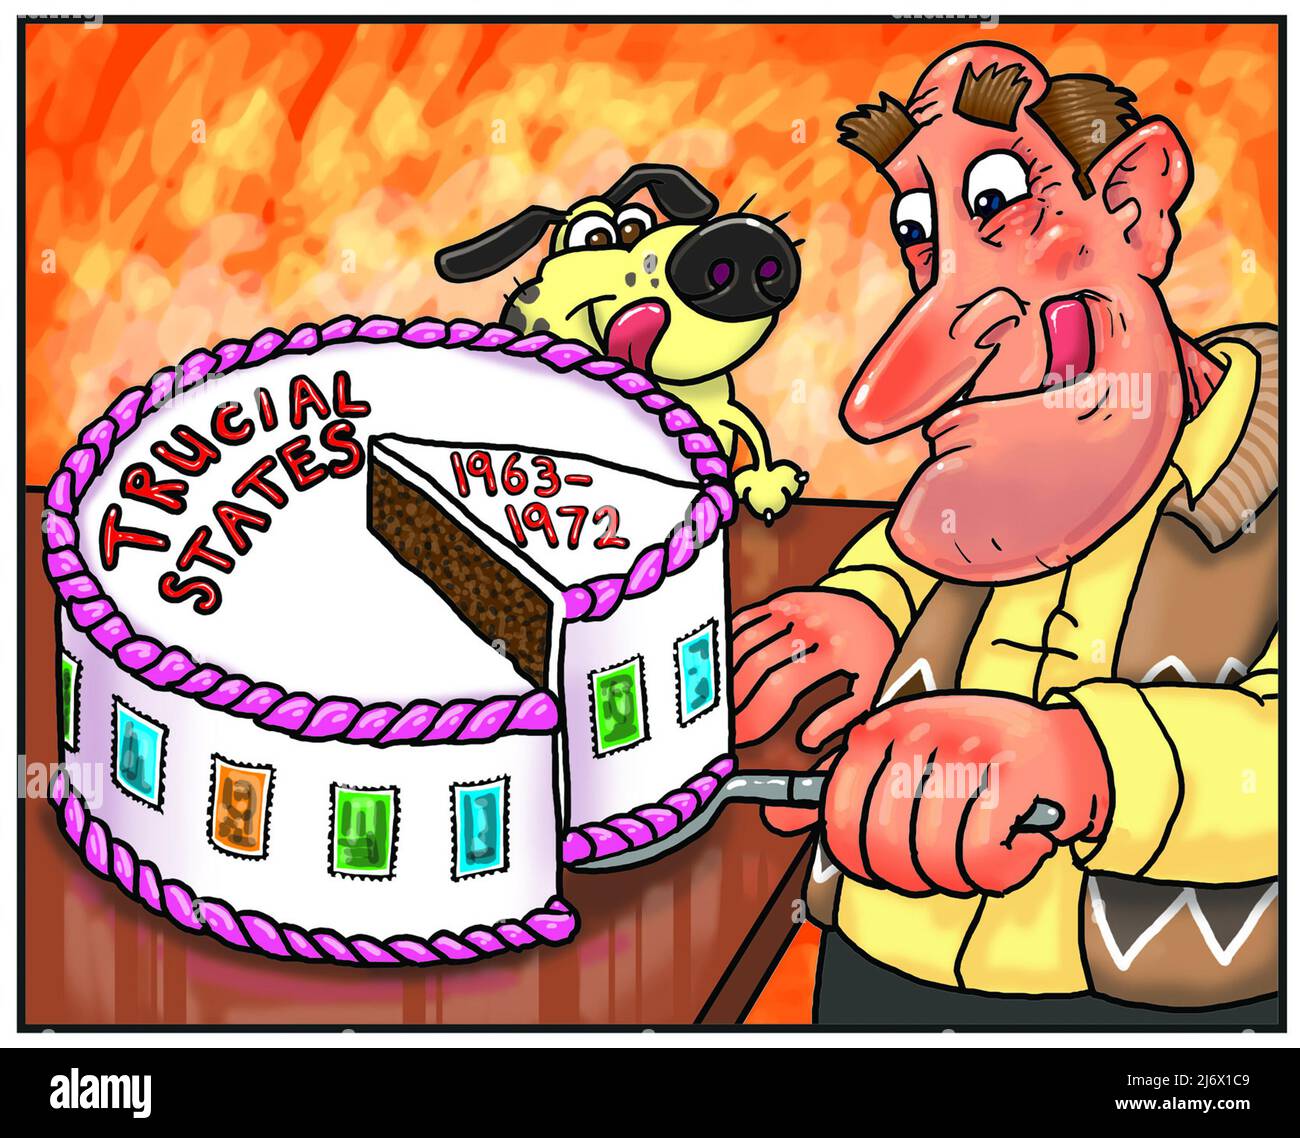 Divertente cartone animato arte di uomo affettare una torta con le parole Trucial dichiara 1963-1972 che illustra l'appello degli stati Trucial francobollo raccolta filatelia Foto Stock